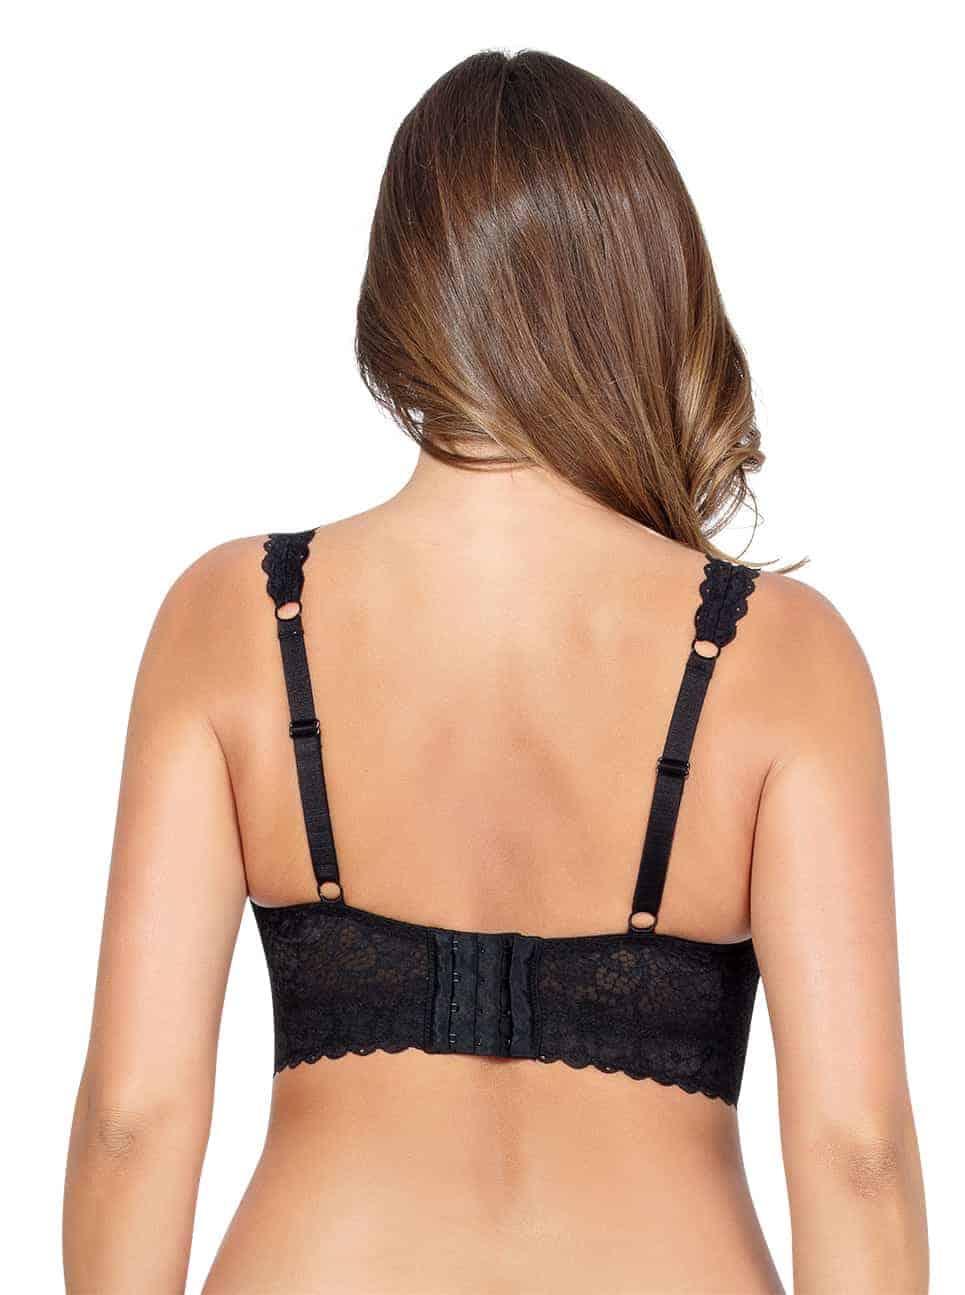 Bear Essentials bra with Twist Tie back (Black & White) – B.Y.O